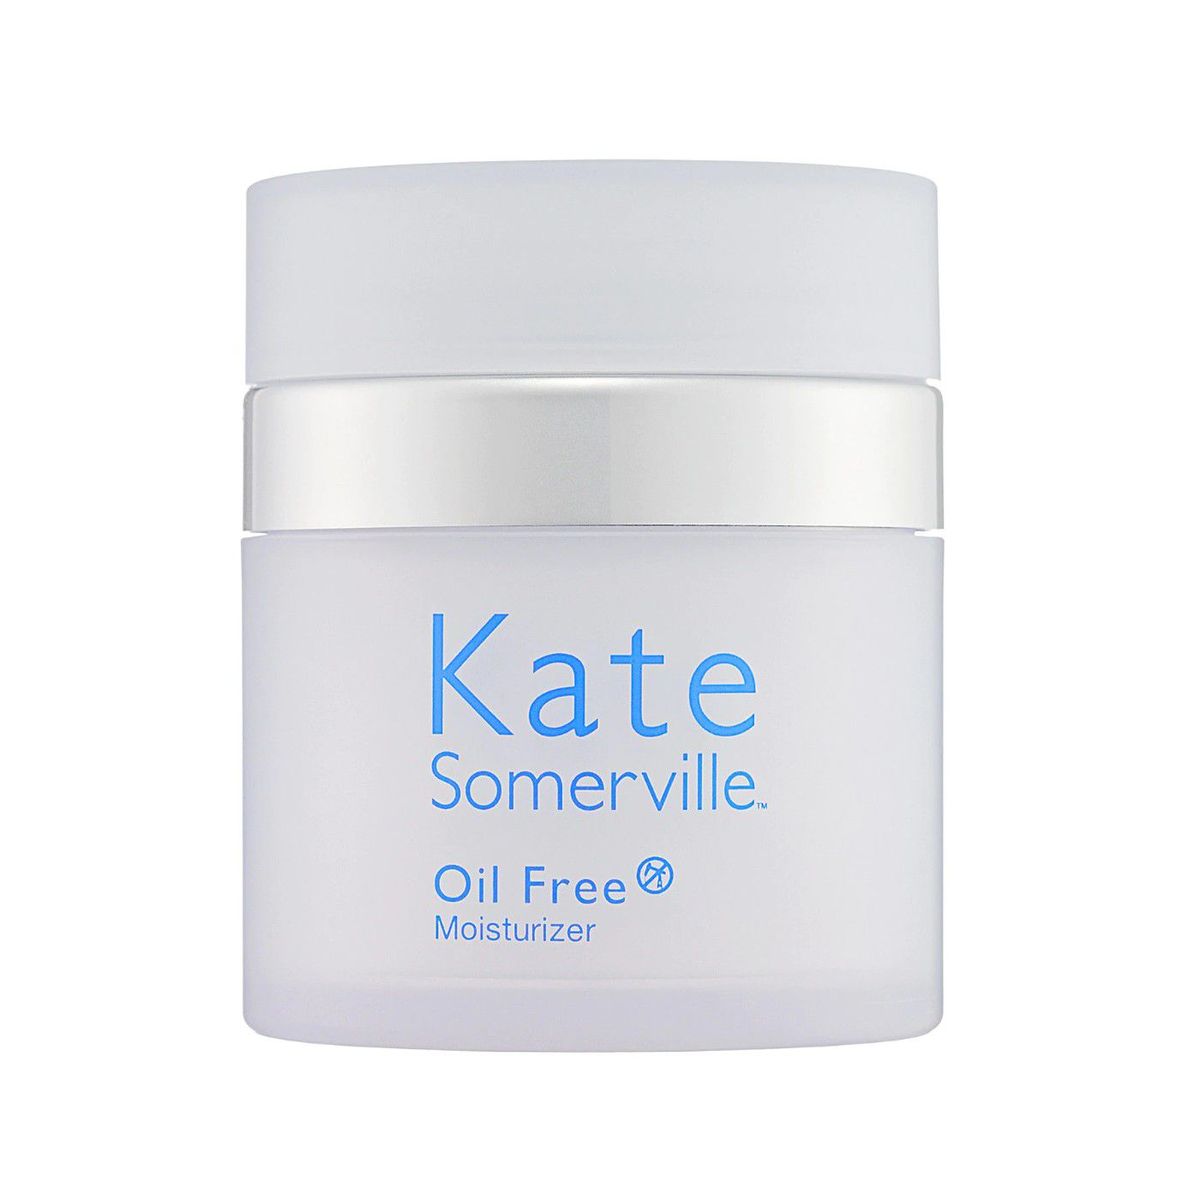 Jar of Kate Somerville Ölfreie Feuchtigkeitscreme auf einem weißen Hintergrund.